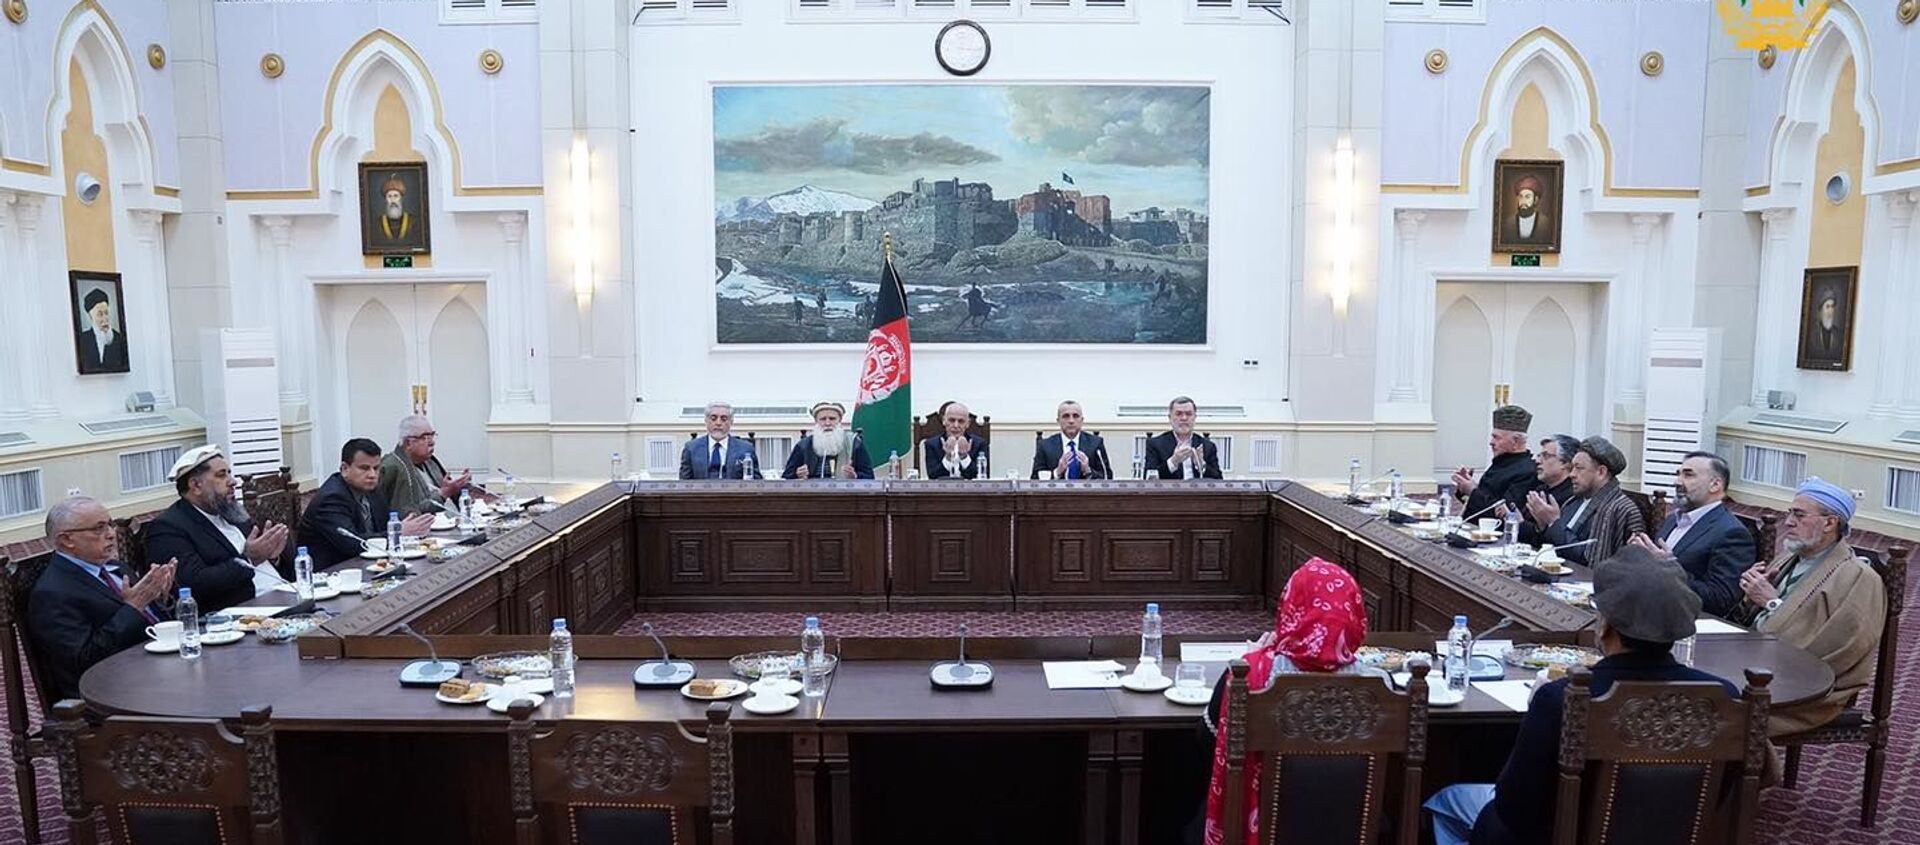 نشست مشورتی در رابطه به صلح؛ چهرهای سیاسی افغانستان باهم جمع شدند - اسپوتنیک افغانستان  , 1920, 10.03.2021